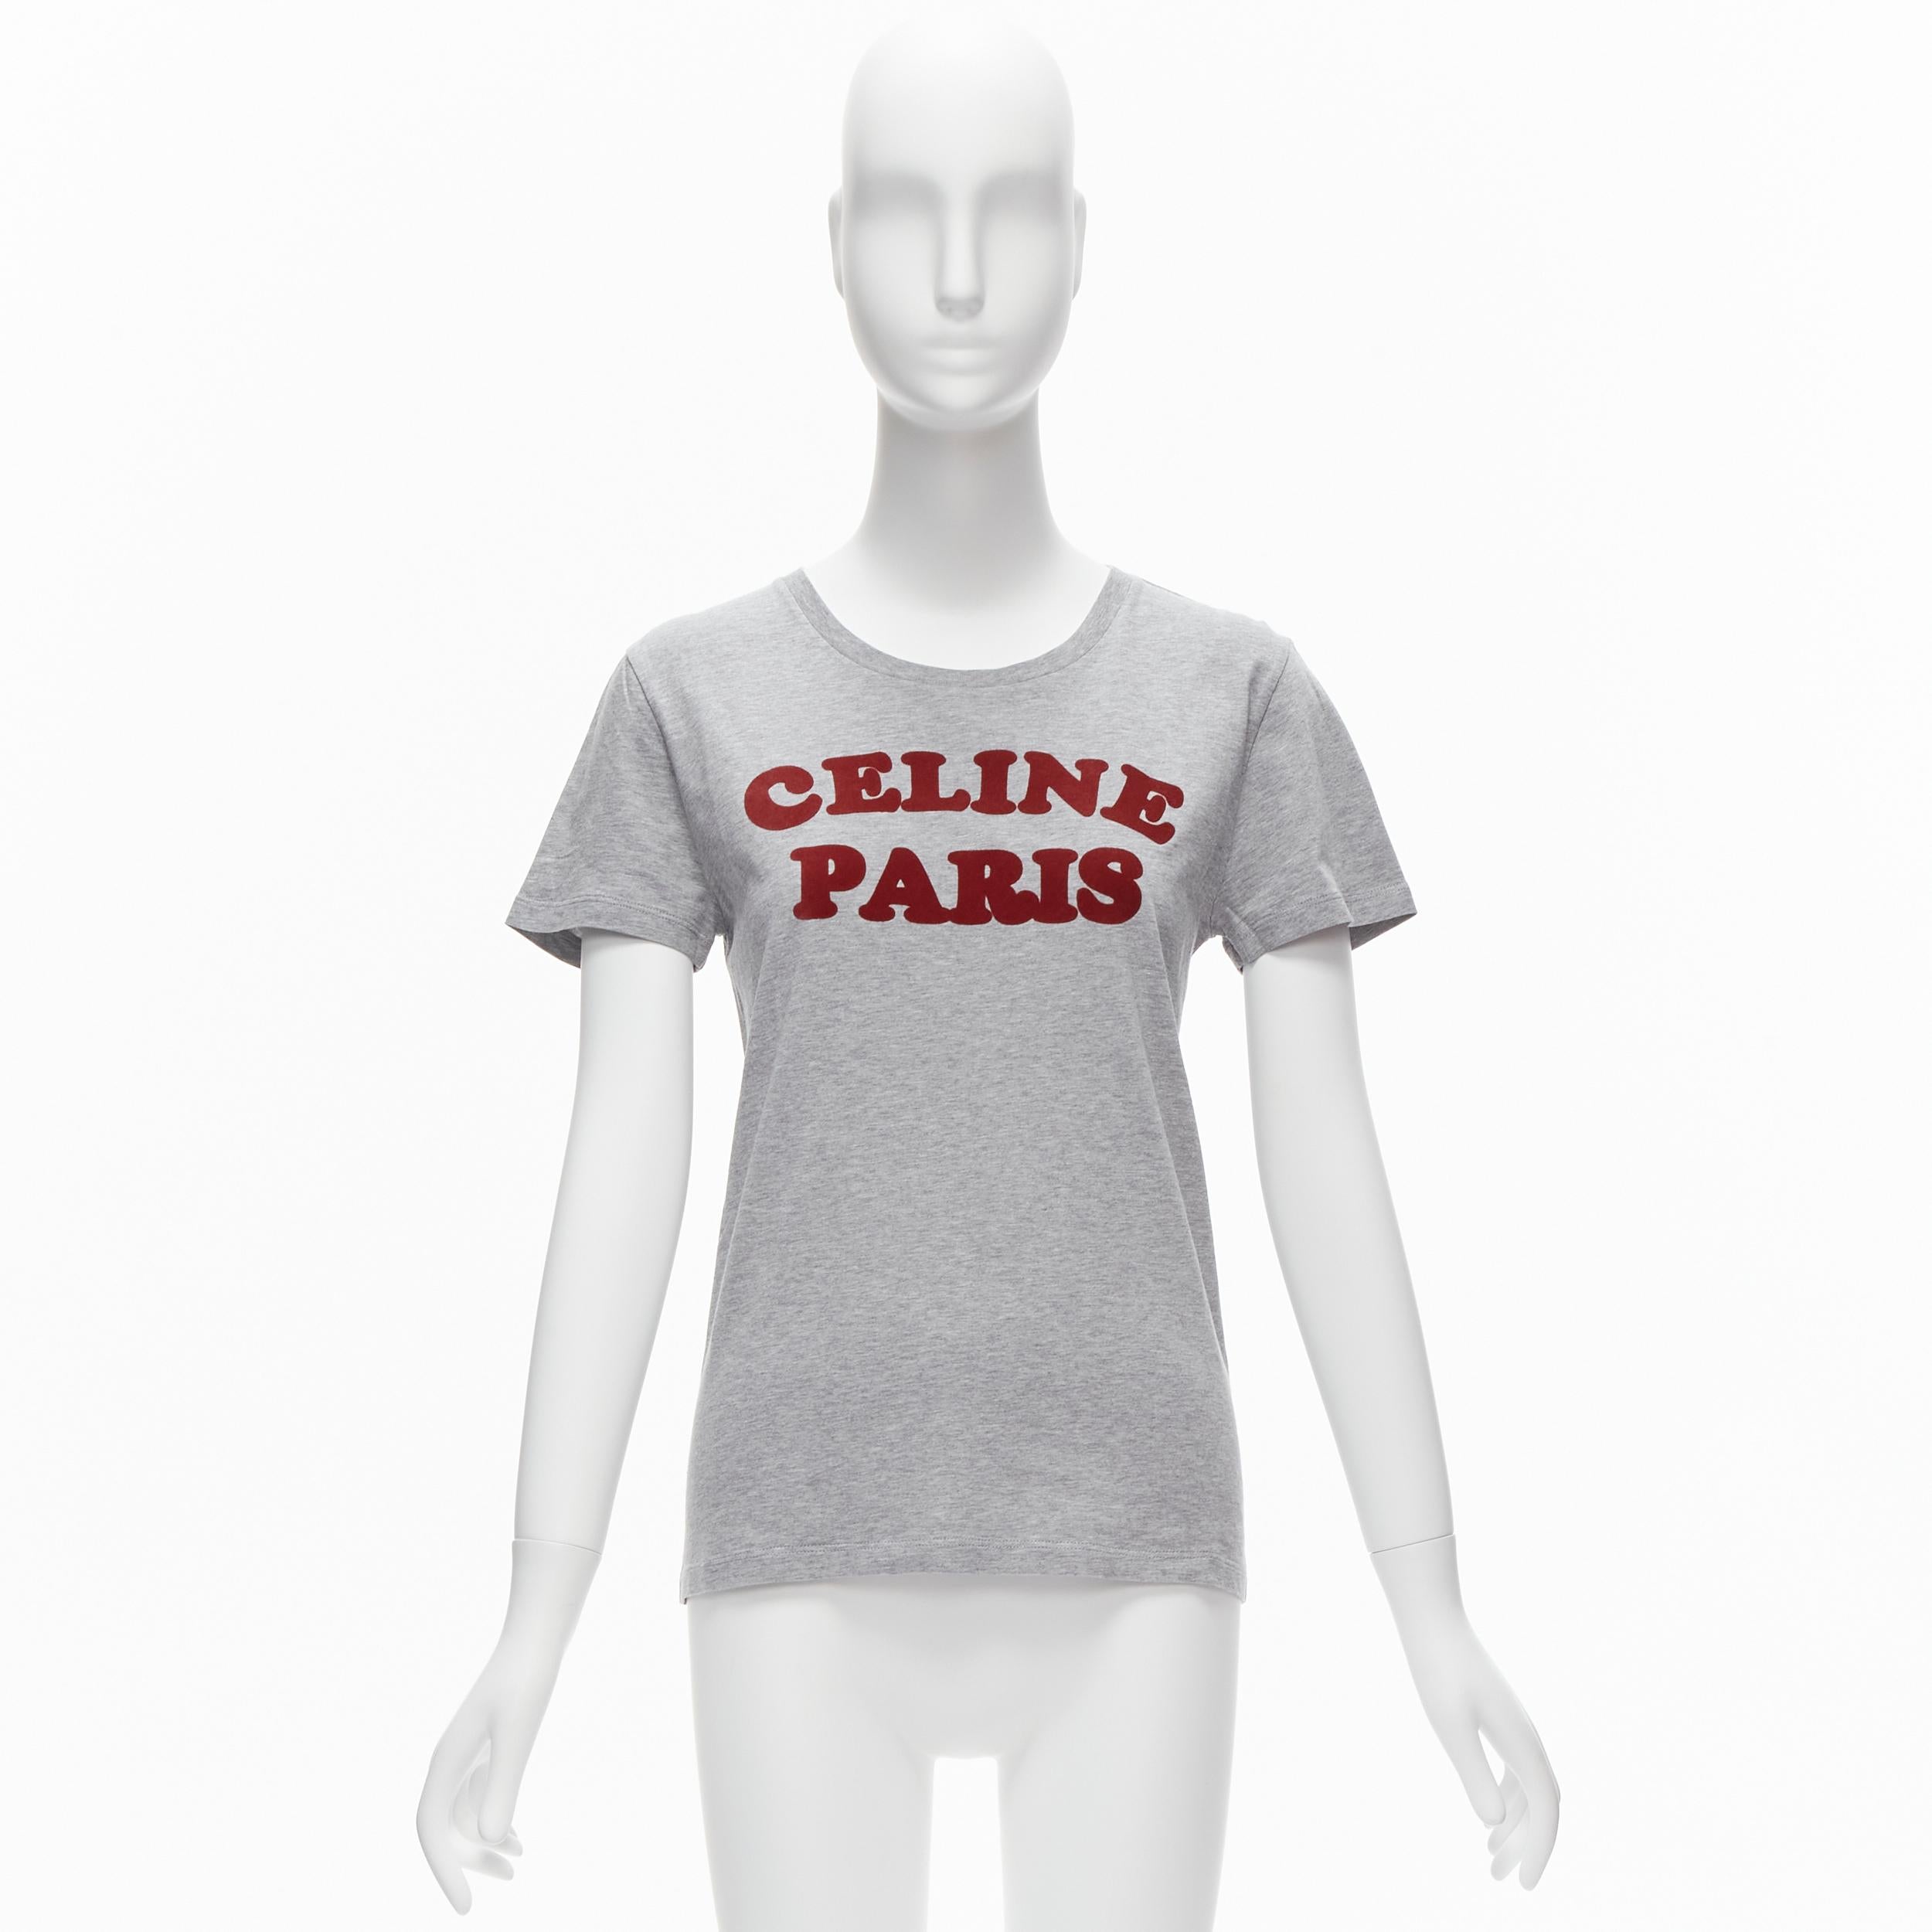 CELINE PARIS red felt logo grey cotton crew neck tshirt XS For Sale 2